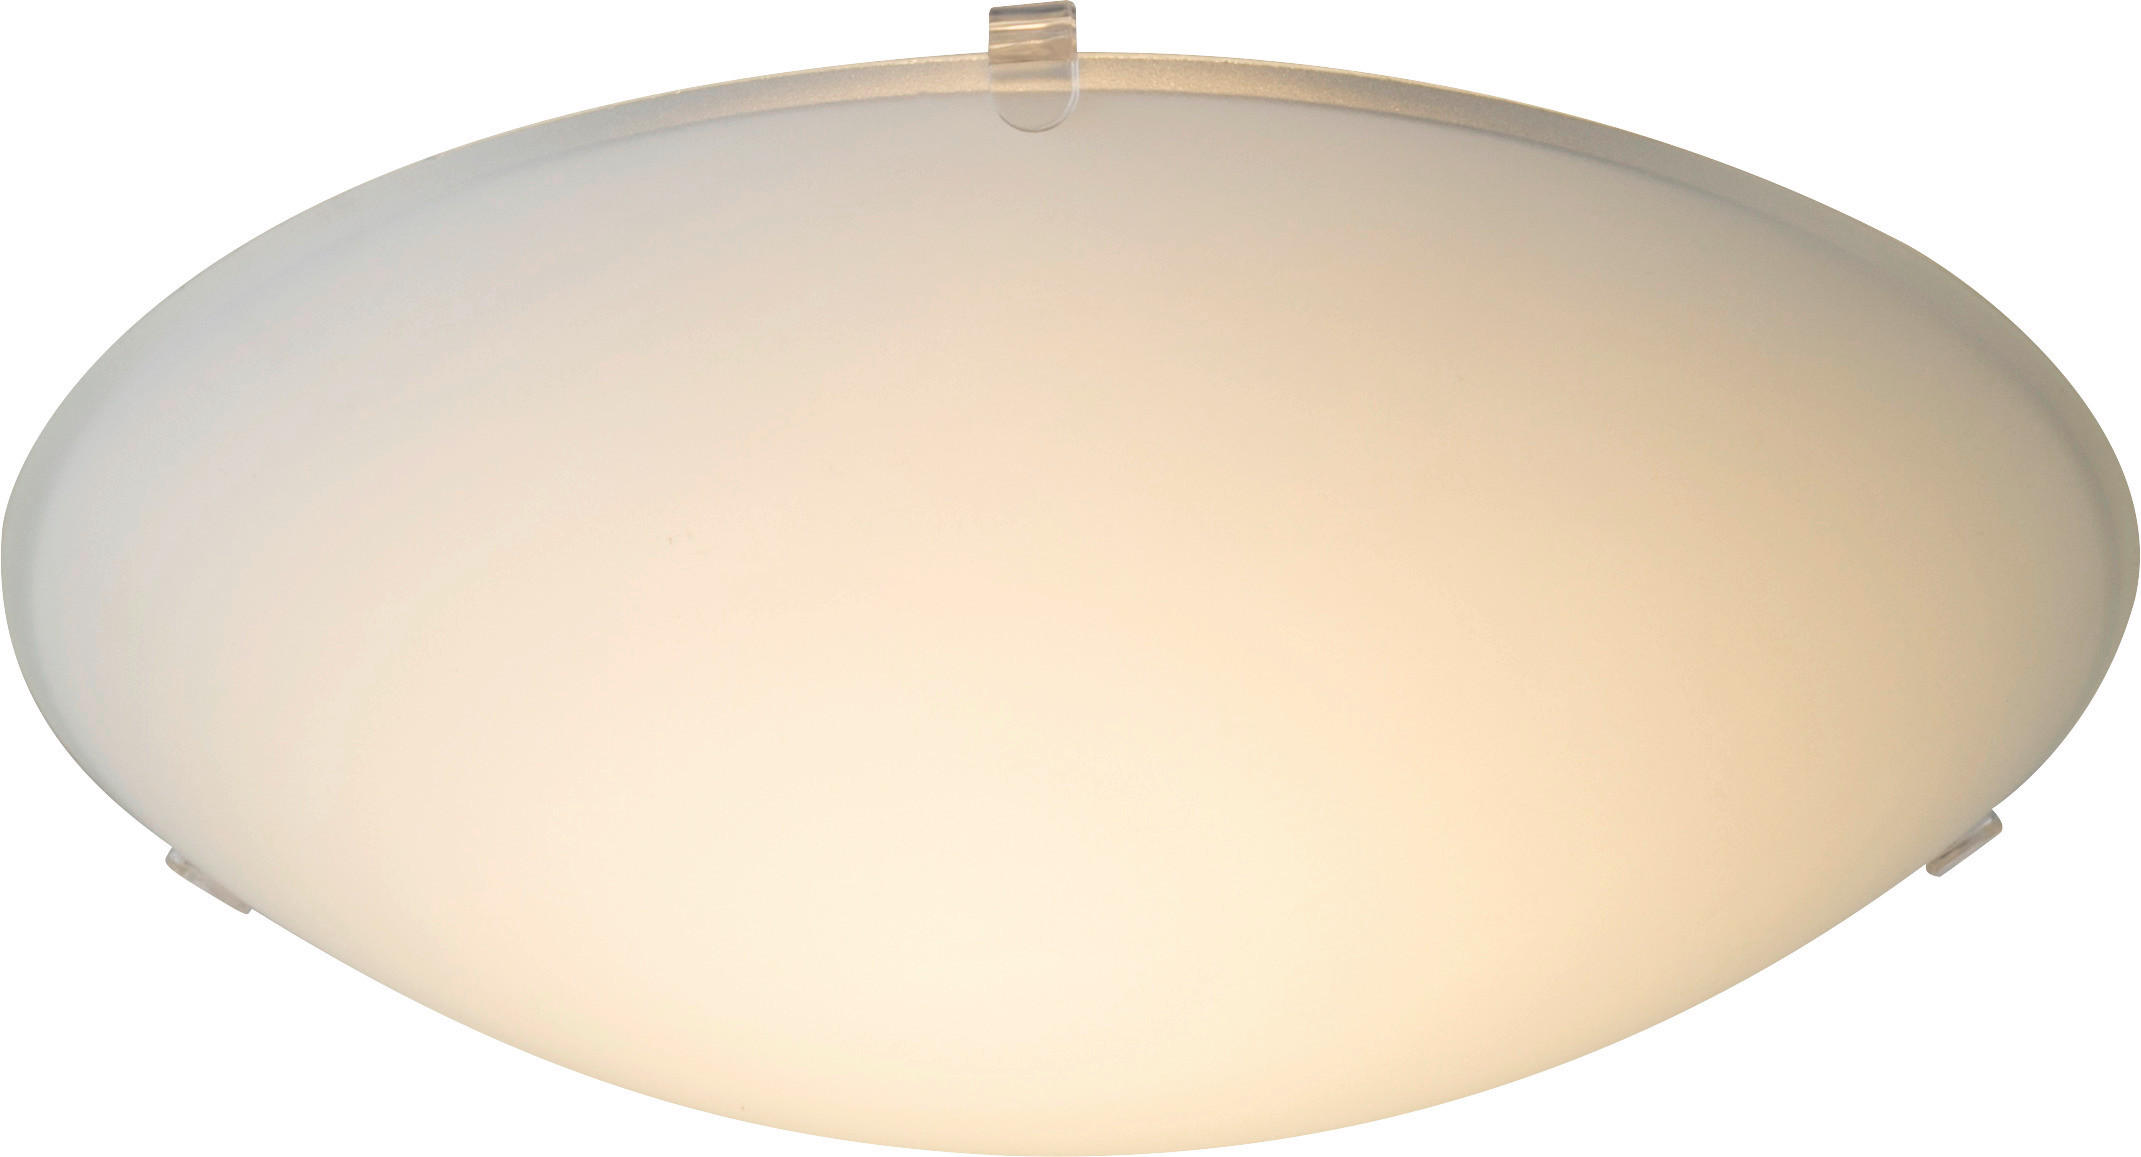 LED STROPNÁ LAMPA, 25 cm - biela, Basics, kov/sklo (25cm) - Xora